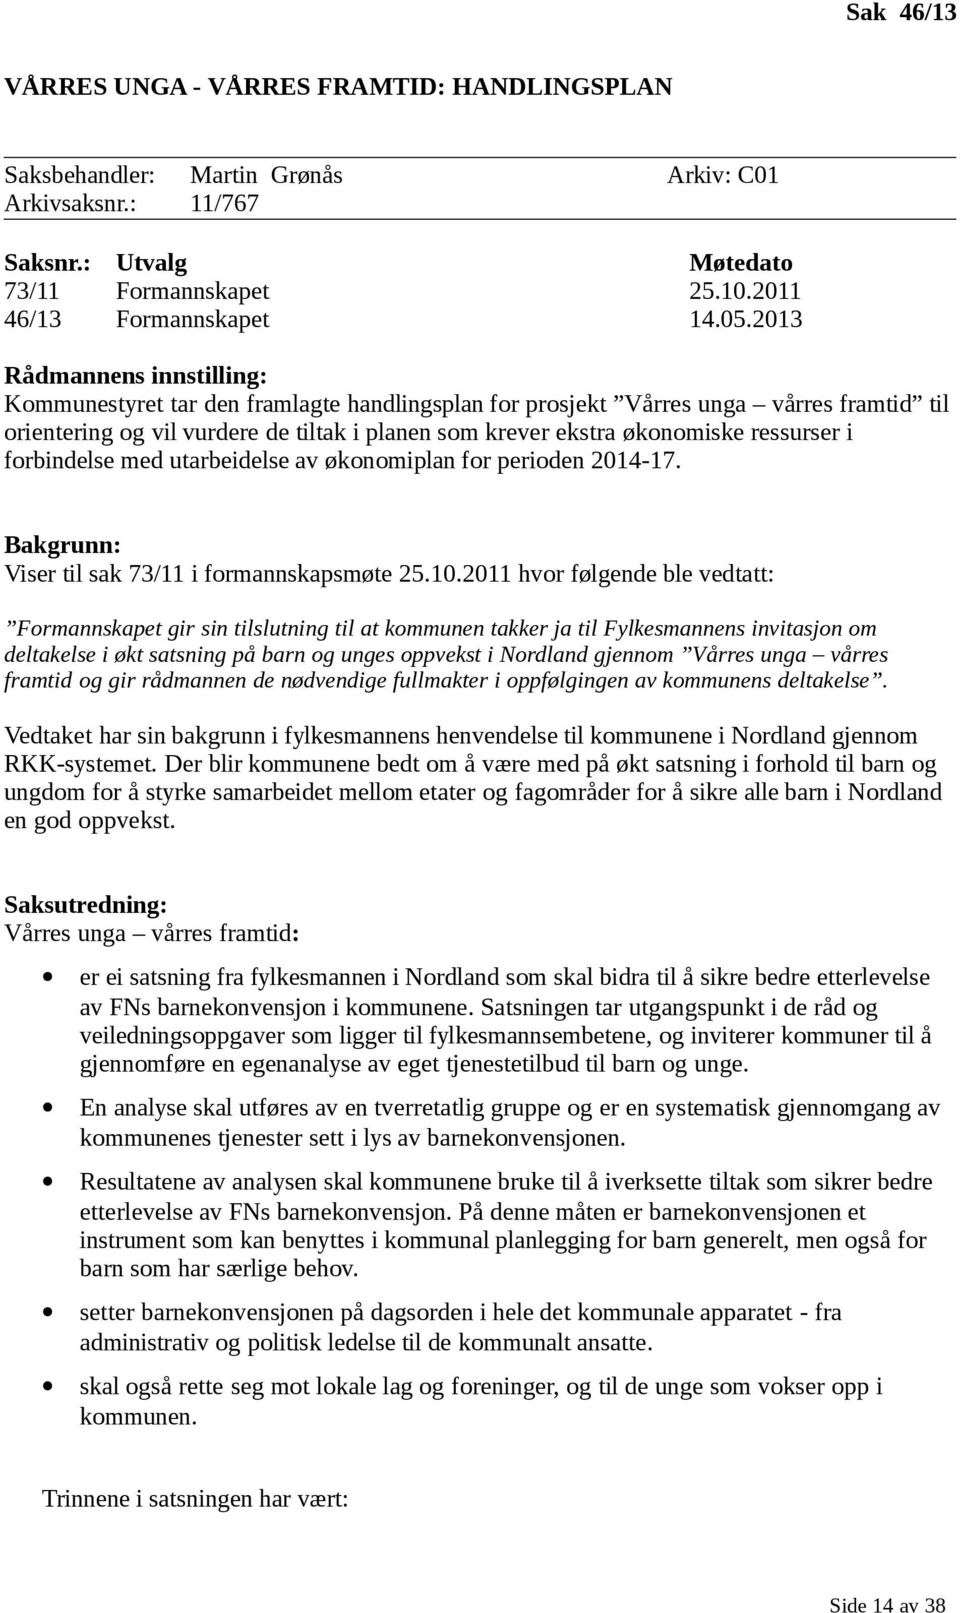 ressurser i forbindelse med utarbeidelse av økonomiplan for perioden 2014-17. Bakgrunn: Viser til sak 73/11 i formannskapsmøte 25.10.